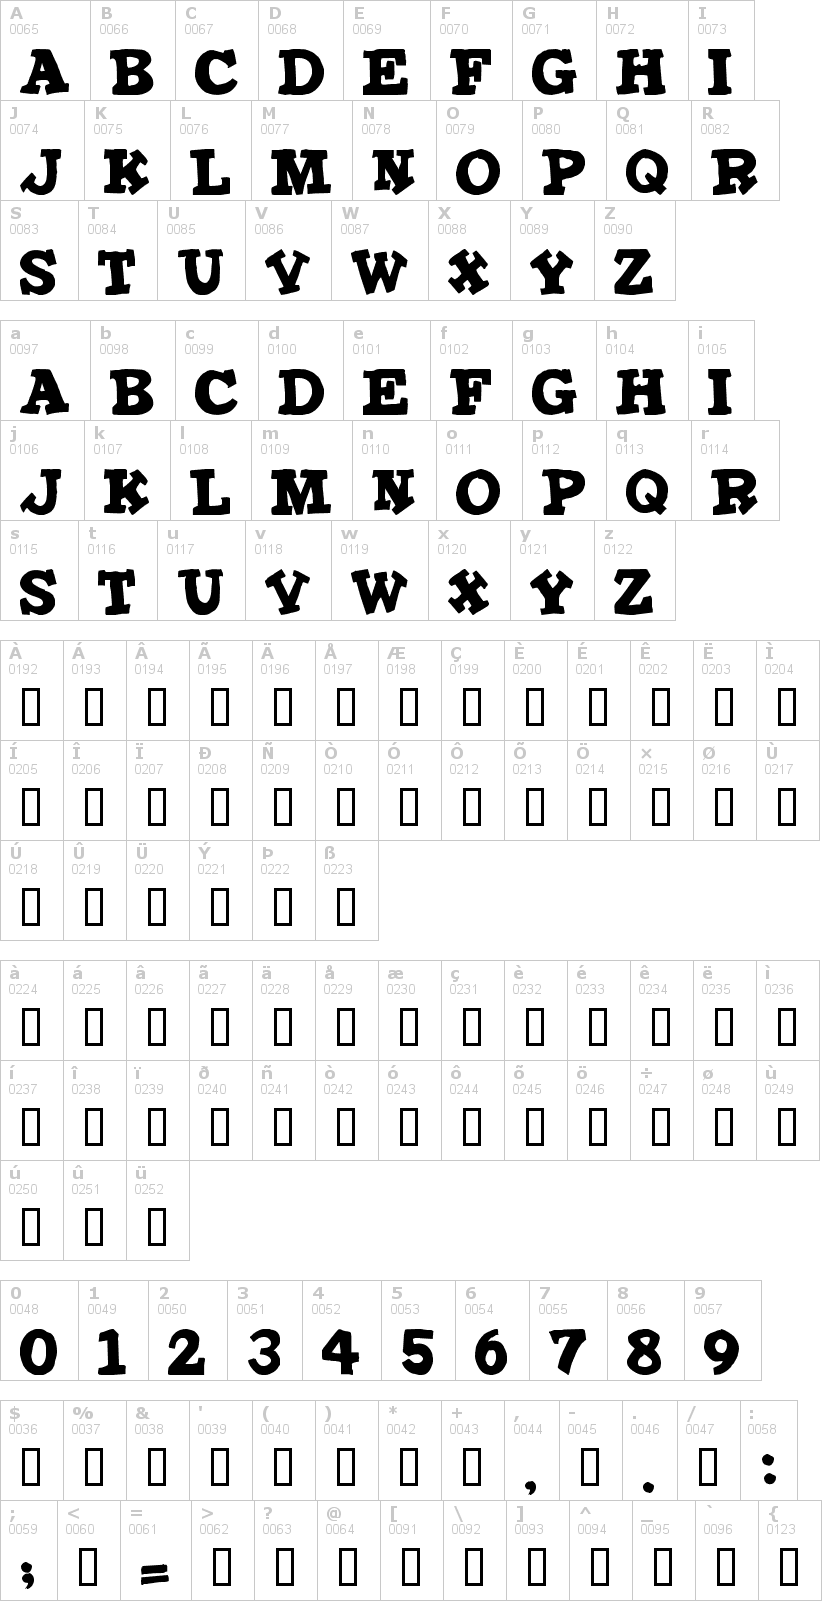 Lettere dell'alfabeto del font iron-man con le quali è possibile realizzare adesivi prespaziati